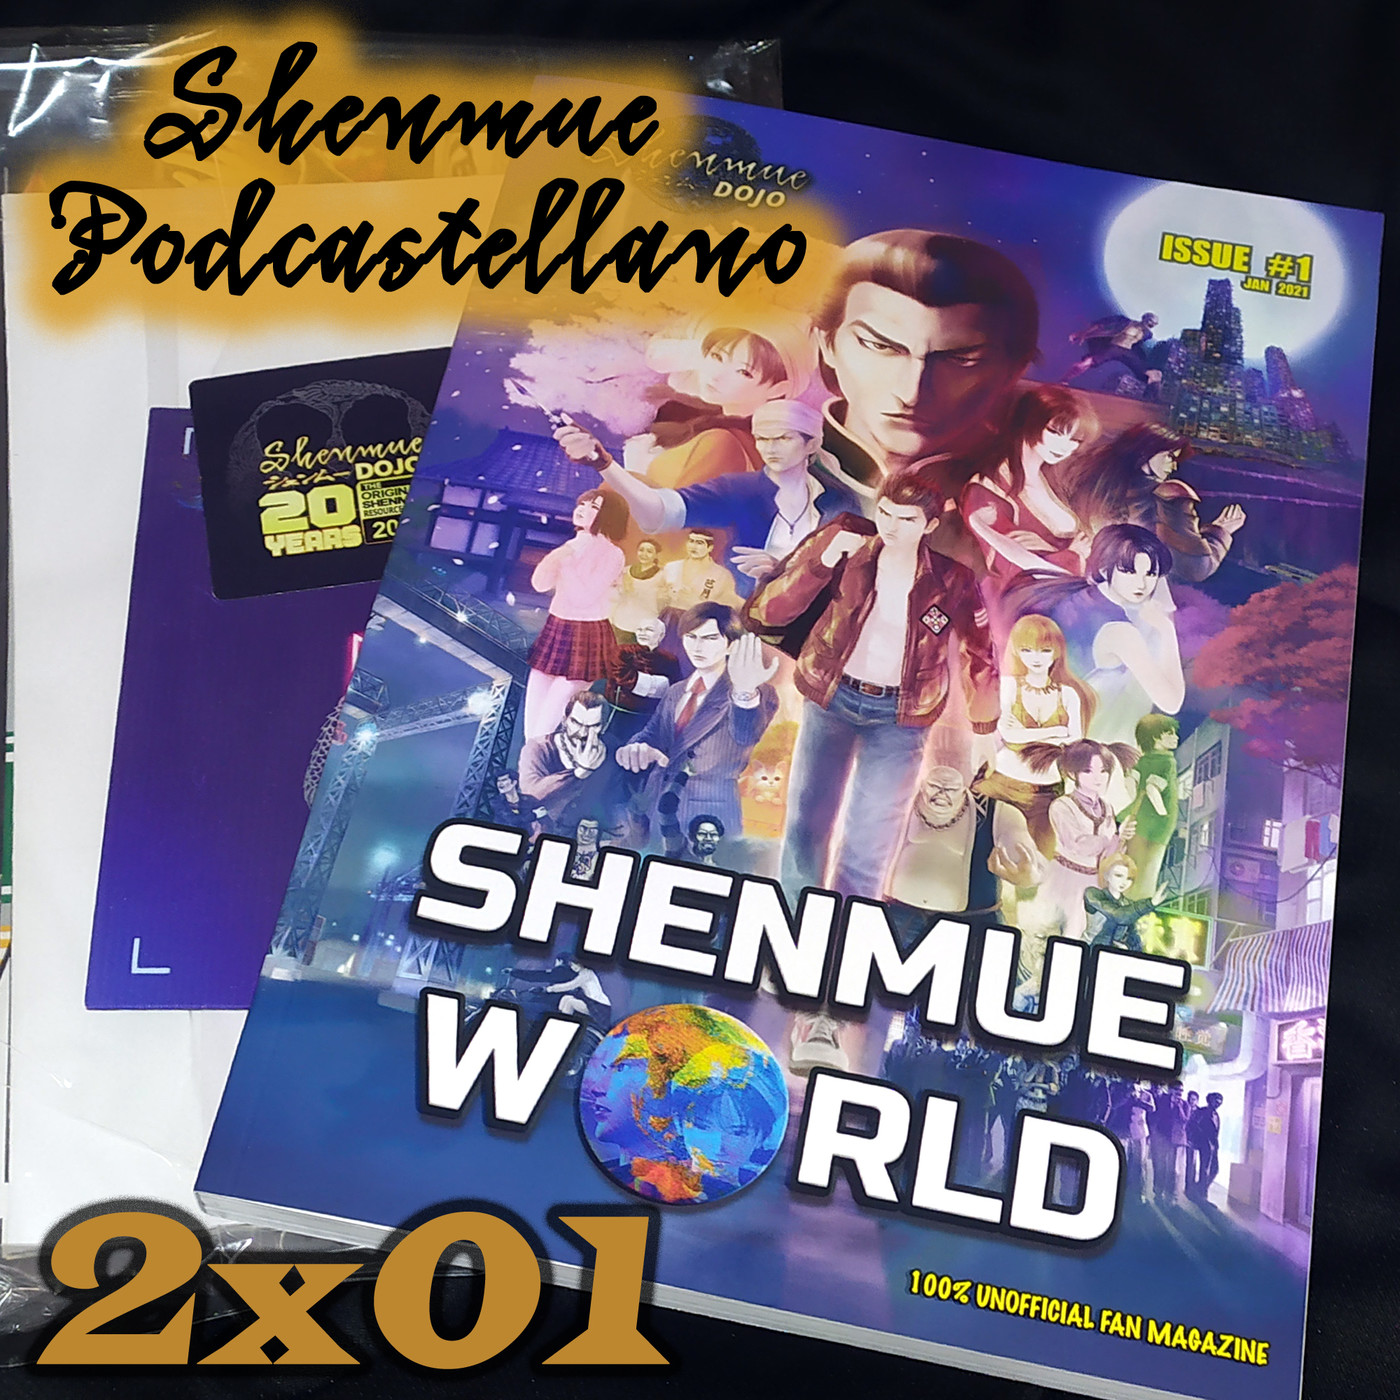 Chapter 2x01: Empezando una nueva temporada y unboxing de la revista Shenmue World